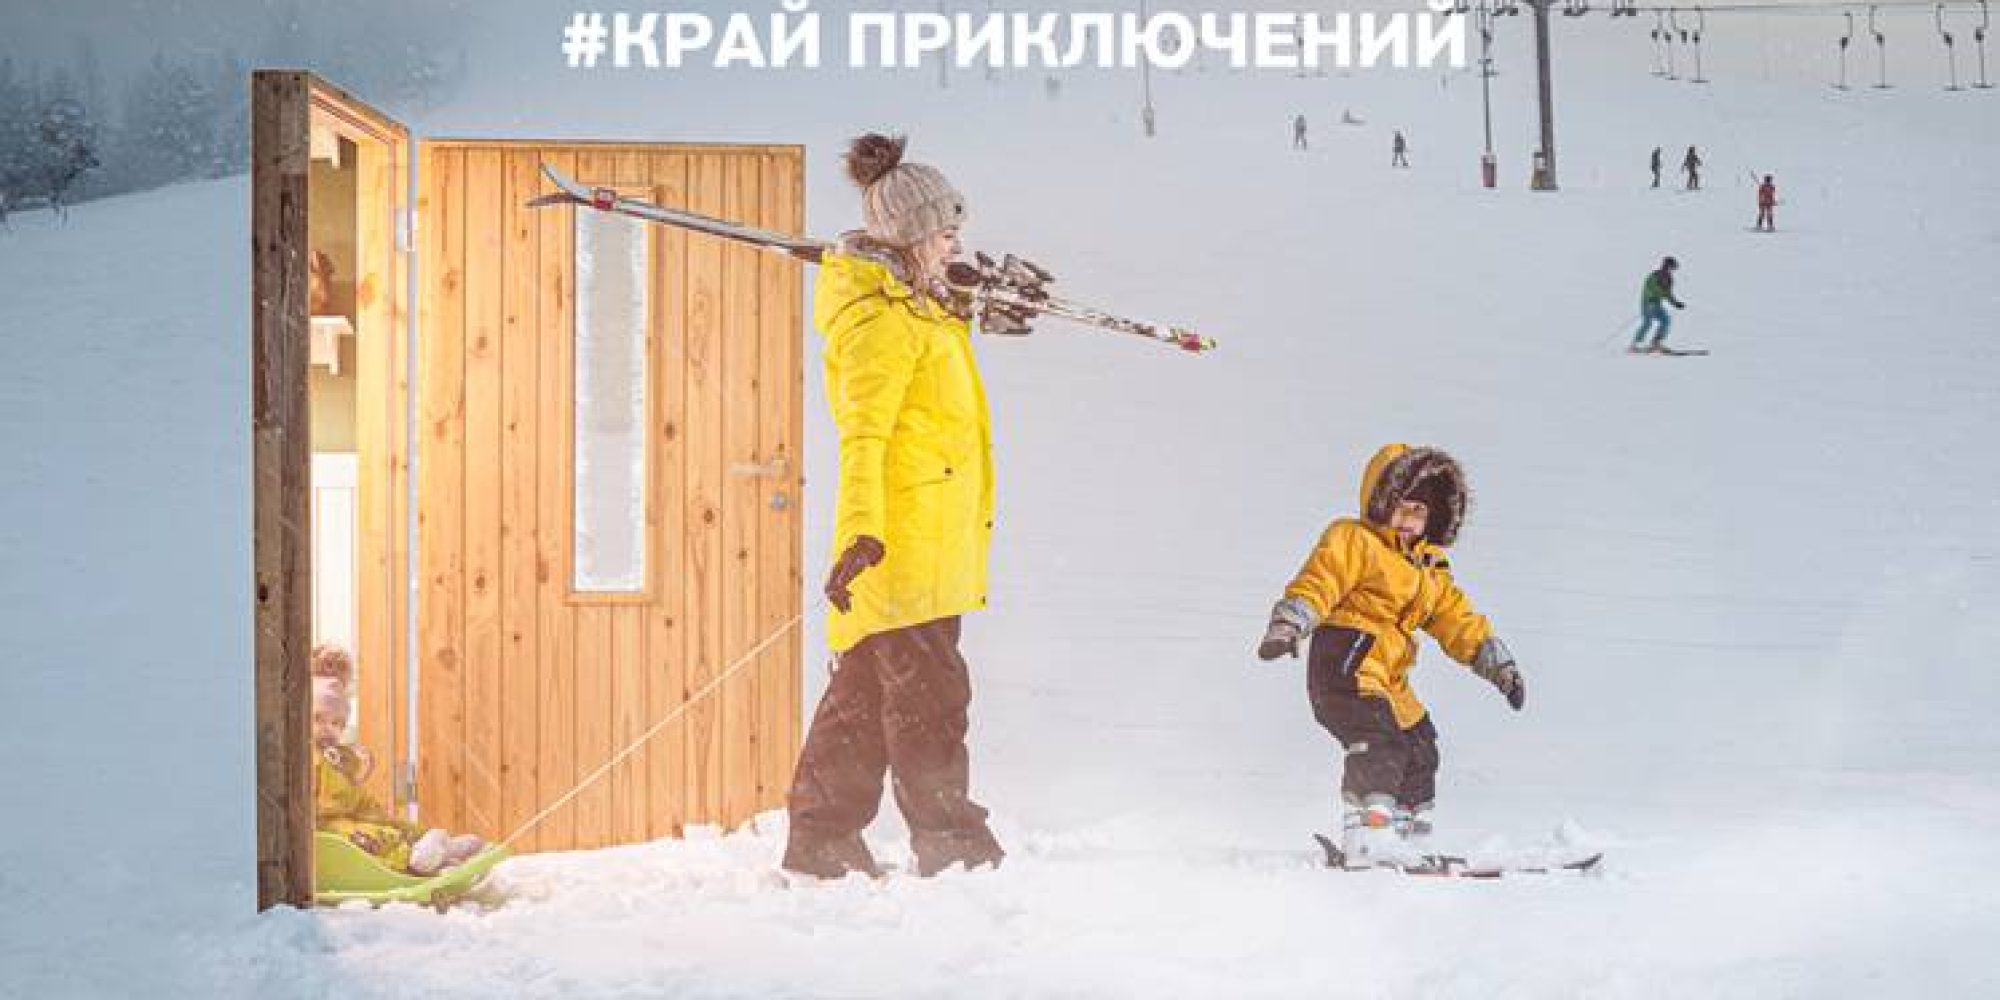 Talveseikluste kujunduspilt vene keeles